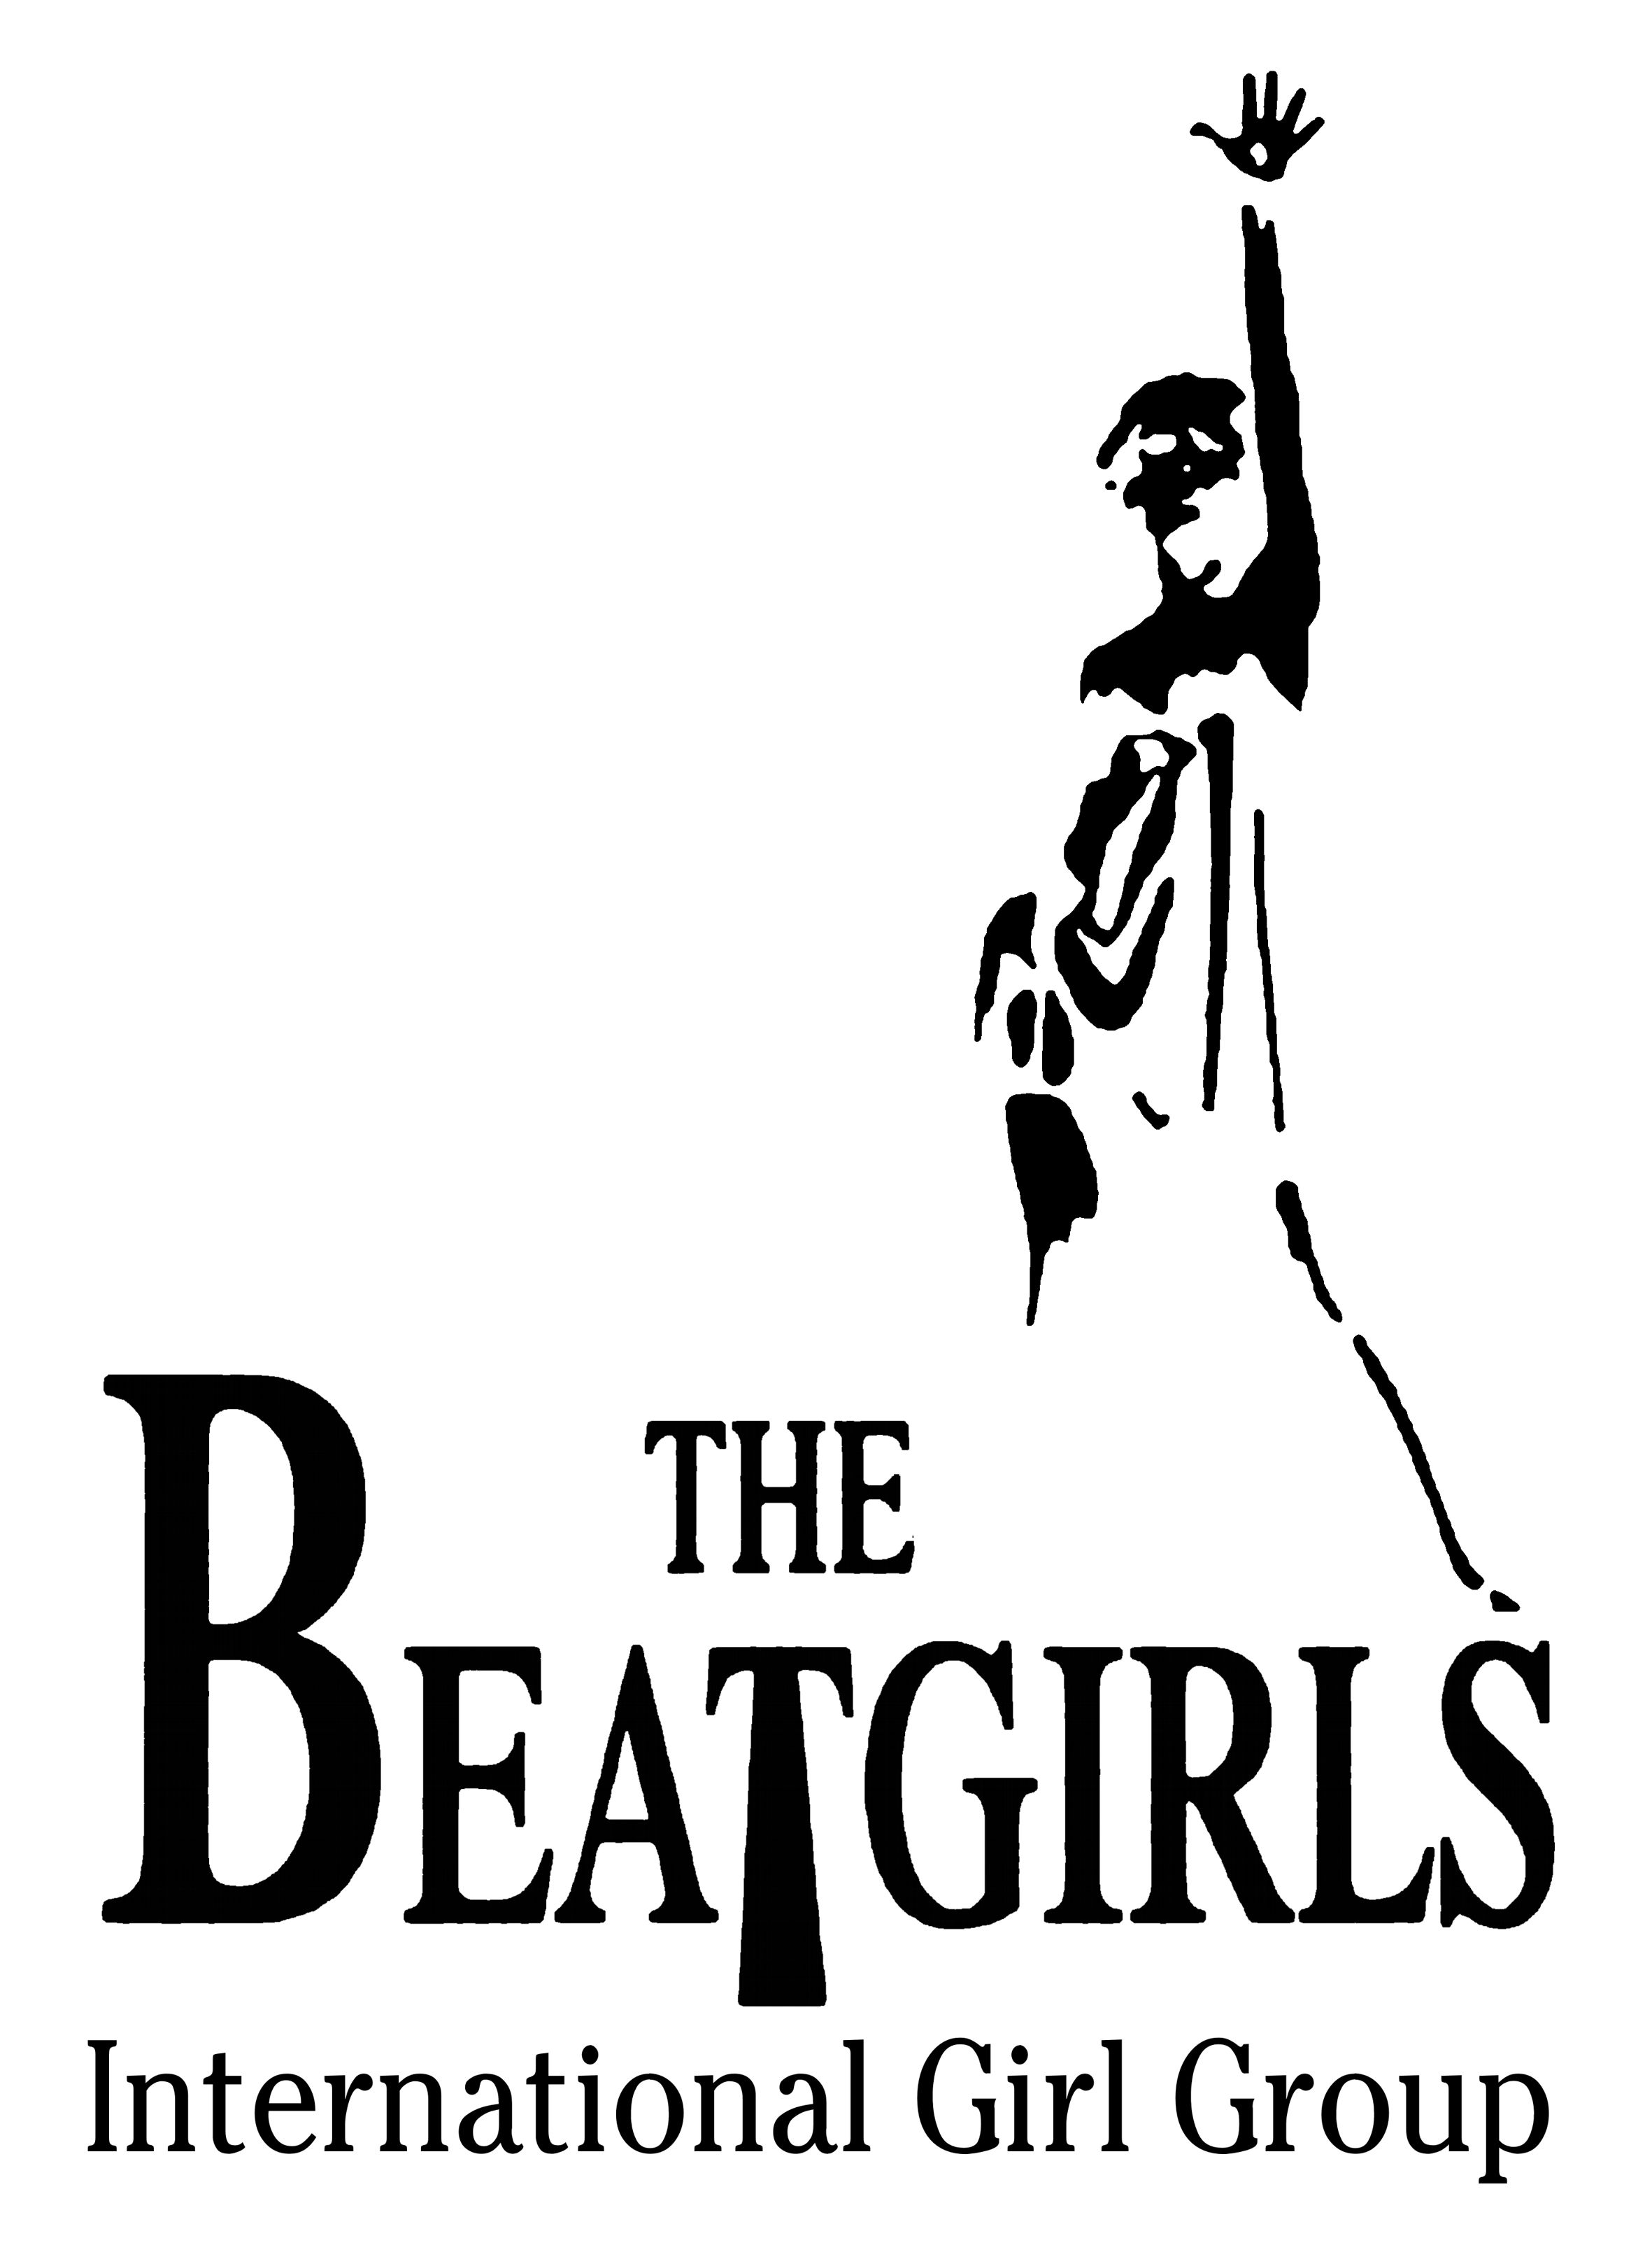 BeatGirls logo black on white